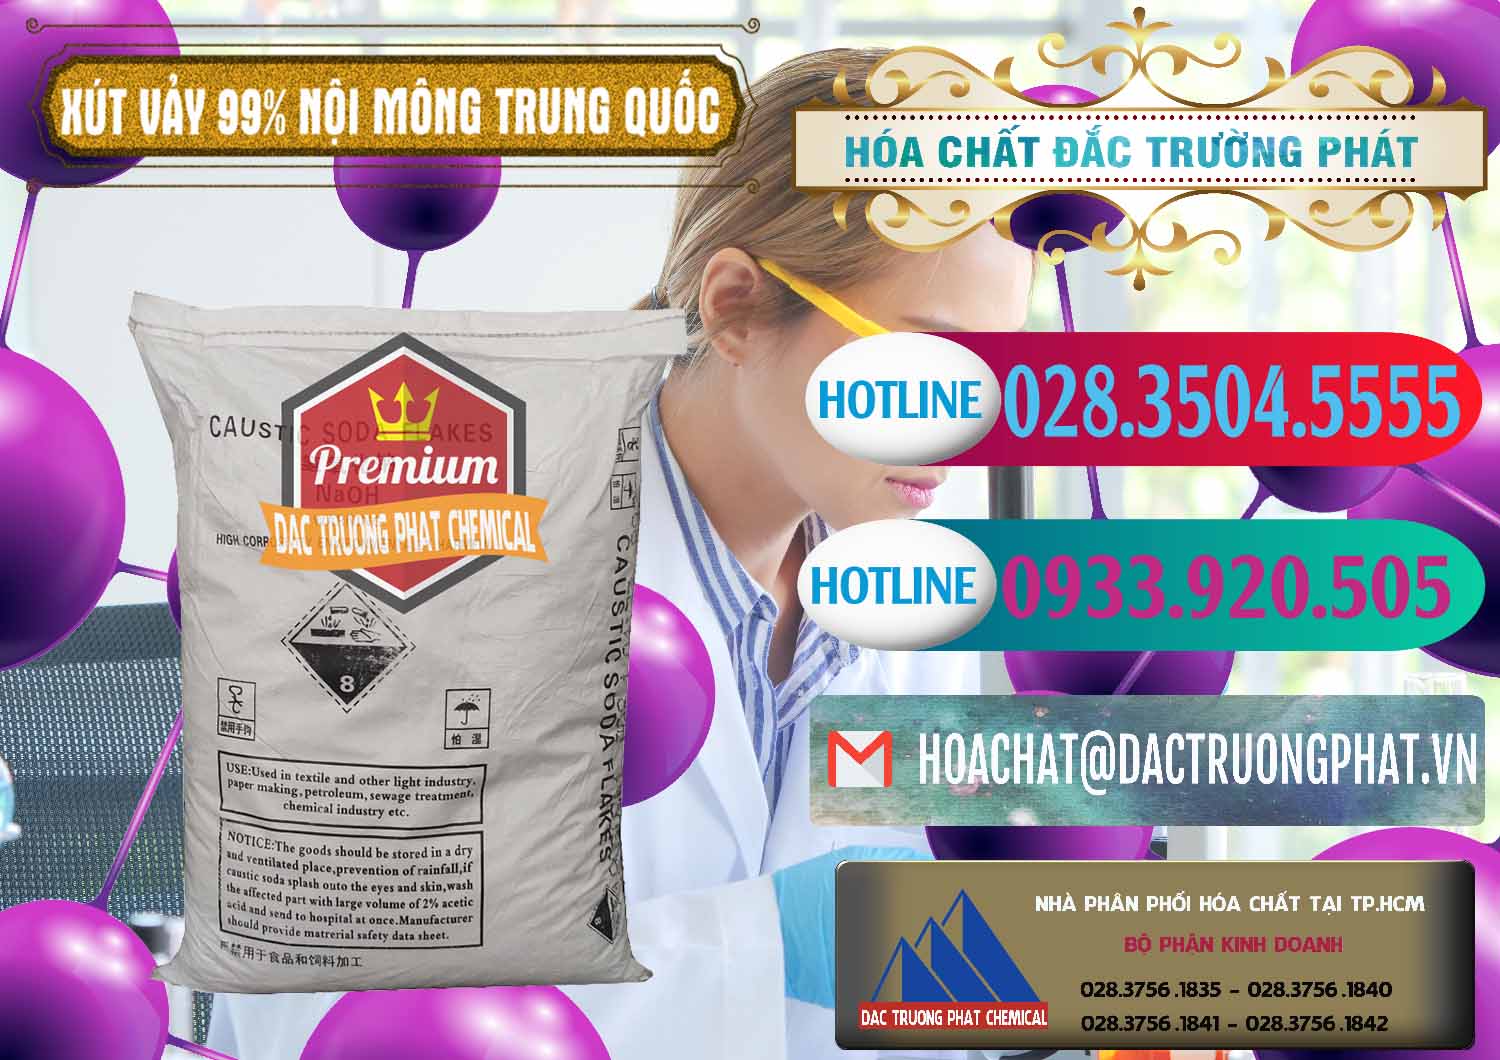 Cty chuyên bán _ cung ứng Xút Vảy - NaOH Vảy 99% Nội Mông Trung Quốc China - 0228 - Công ty chuyên kinh doanh _ cung cấp hóa chất tại TP.HCM - truongphat.vn